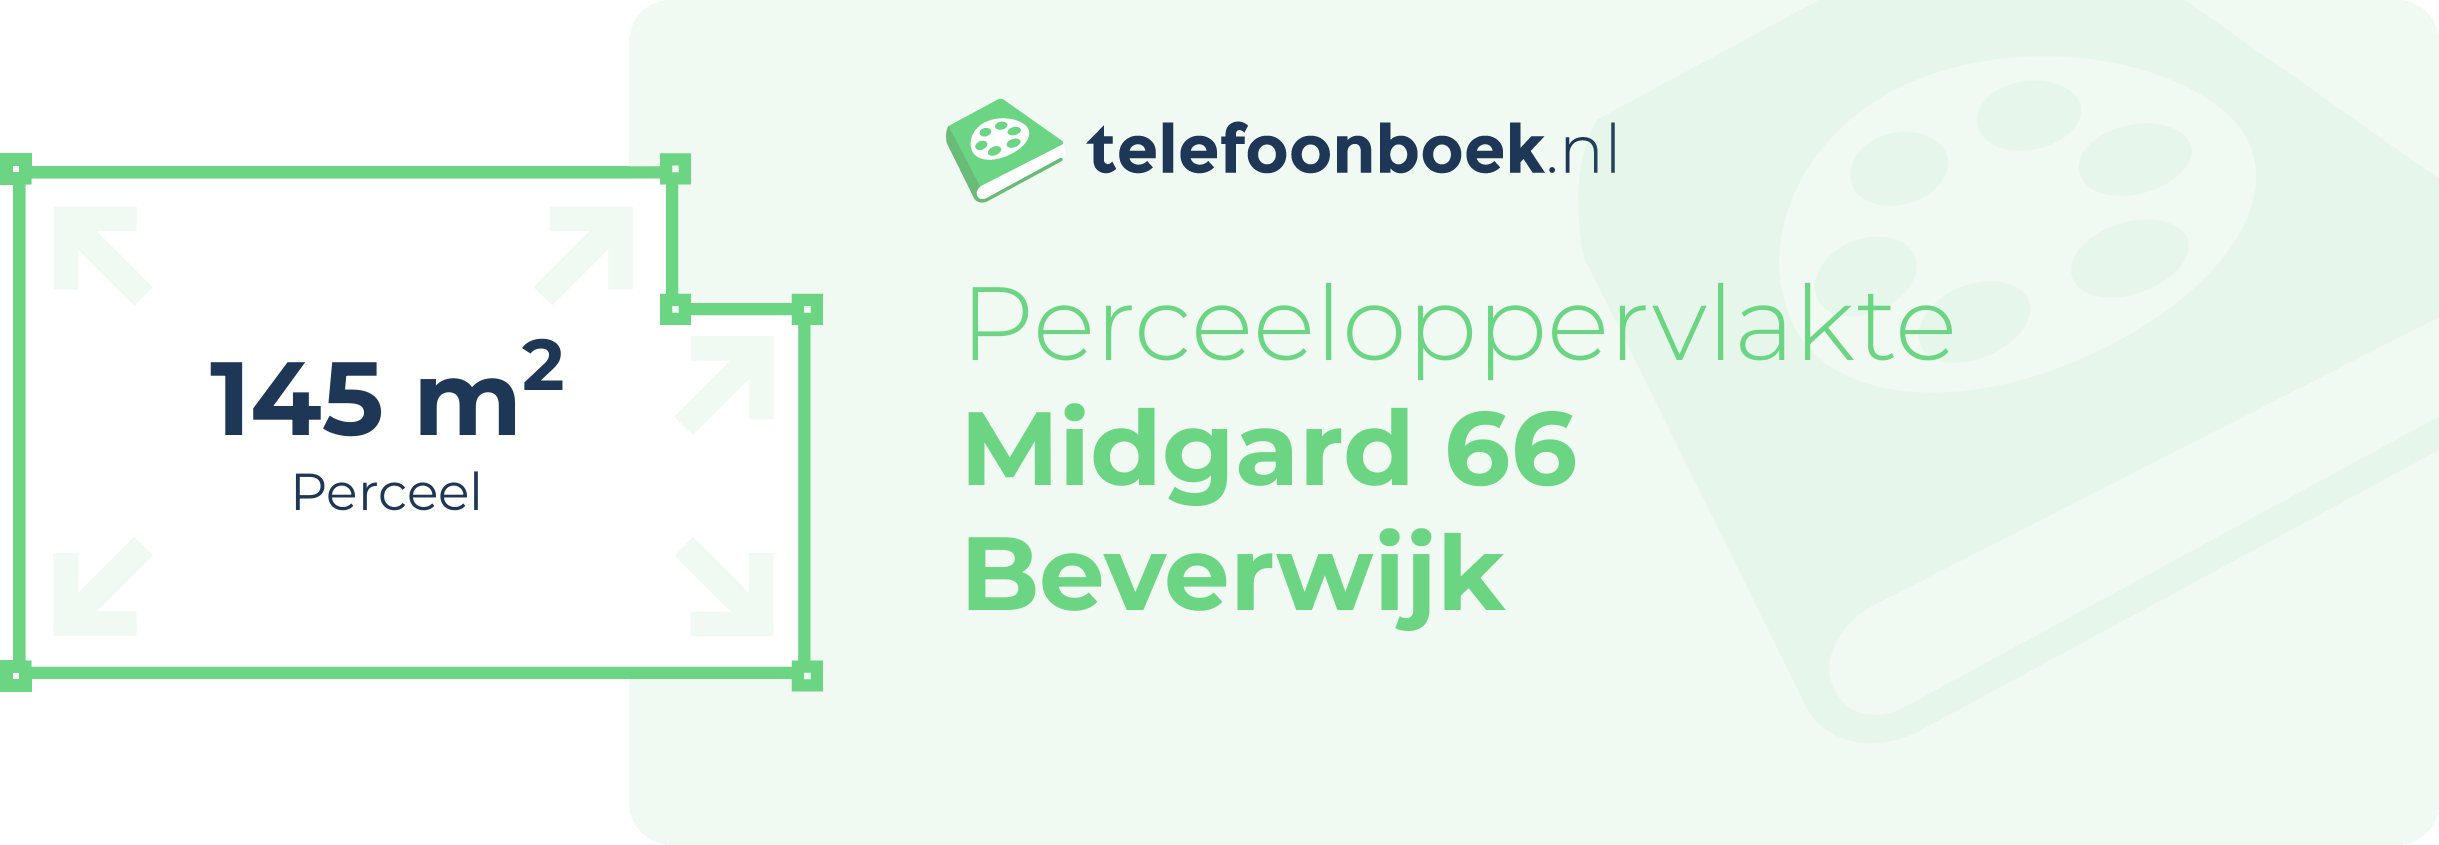 Perceeloppervlakte Midgard 66 Beverwijk